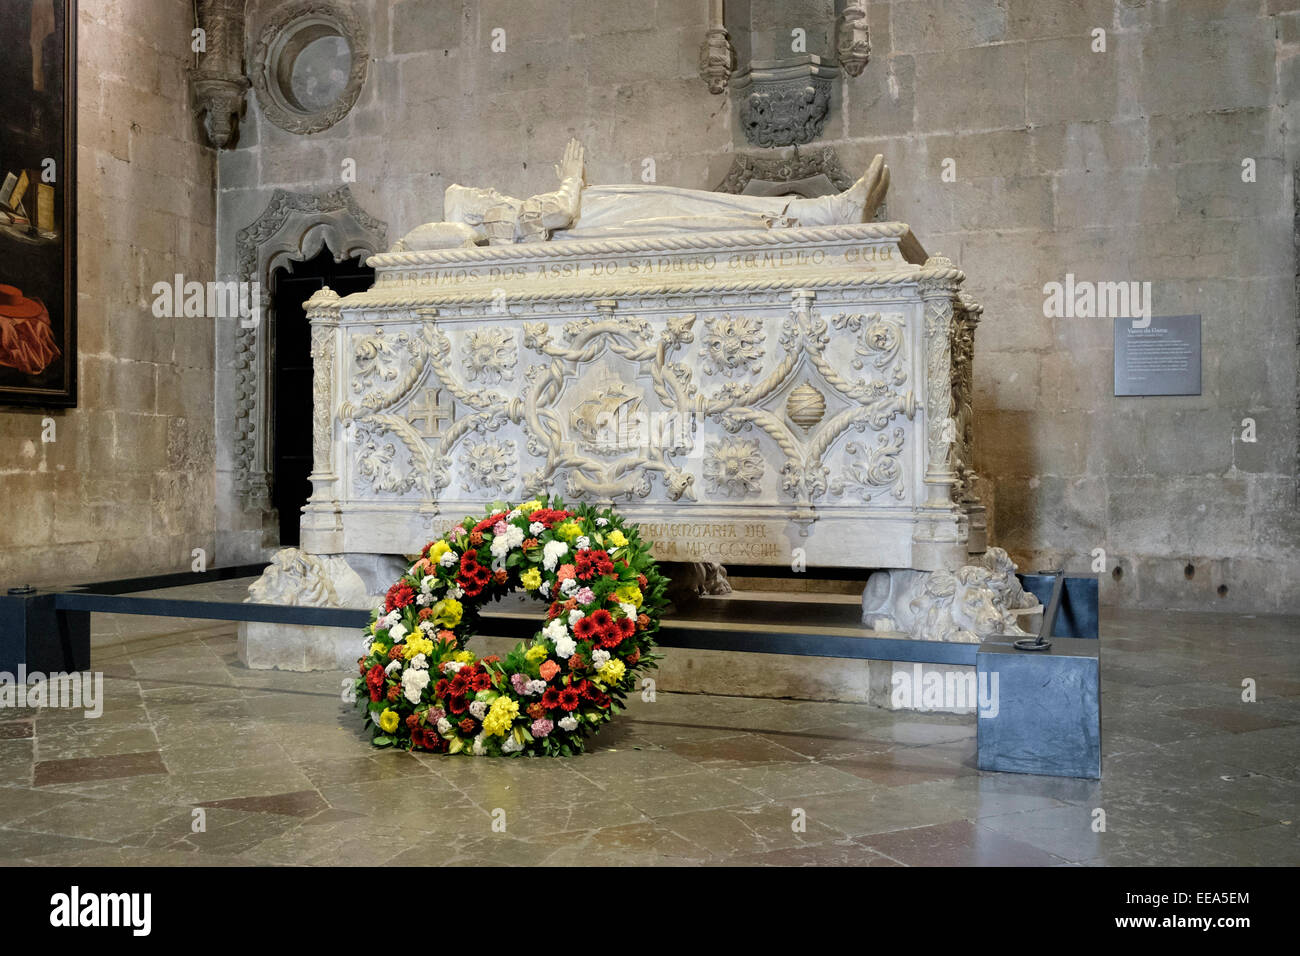 Portugal, Lisbonne, le monastère : la tombe de l'explorateur portugais, Vasco da Gama Banque D'Images